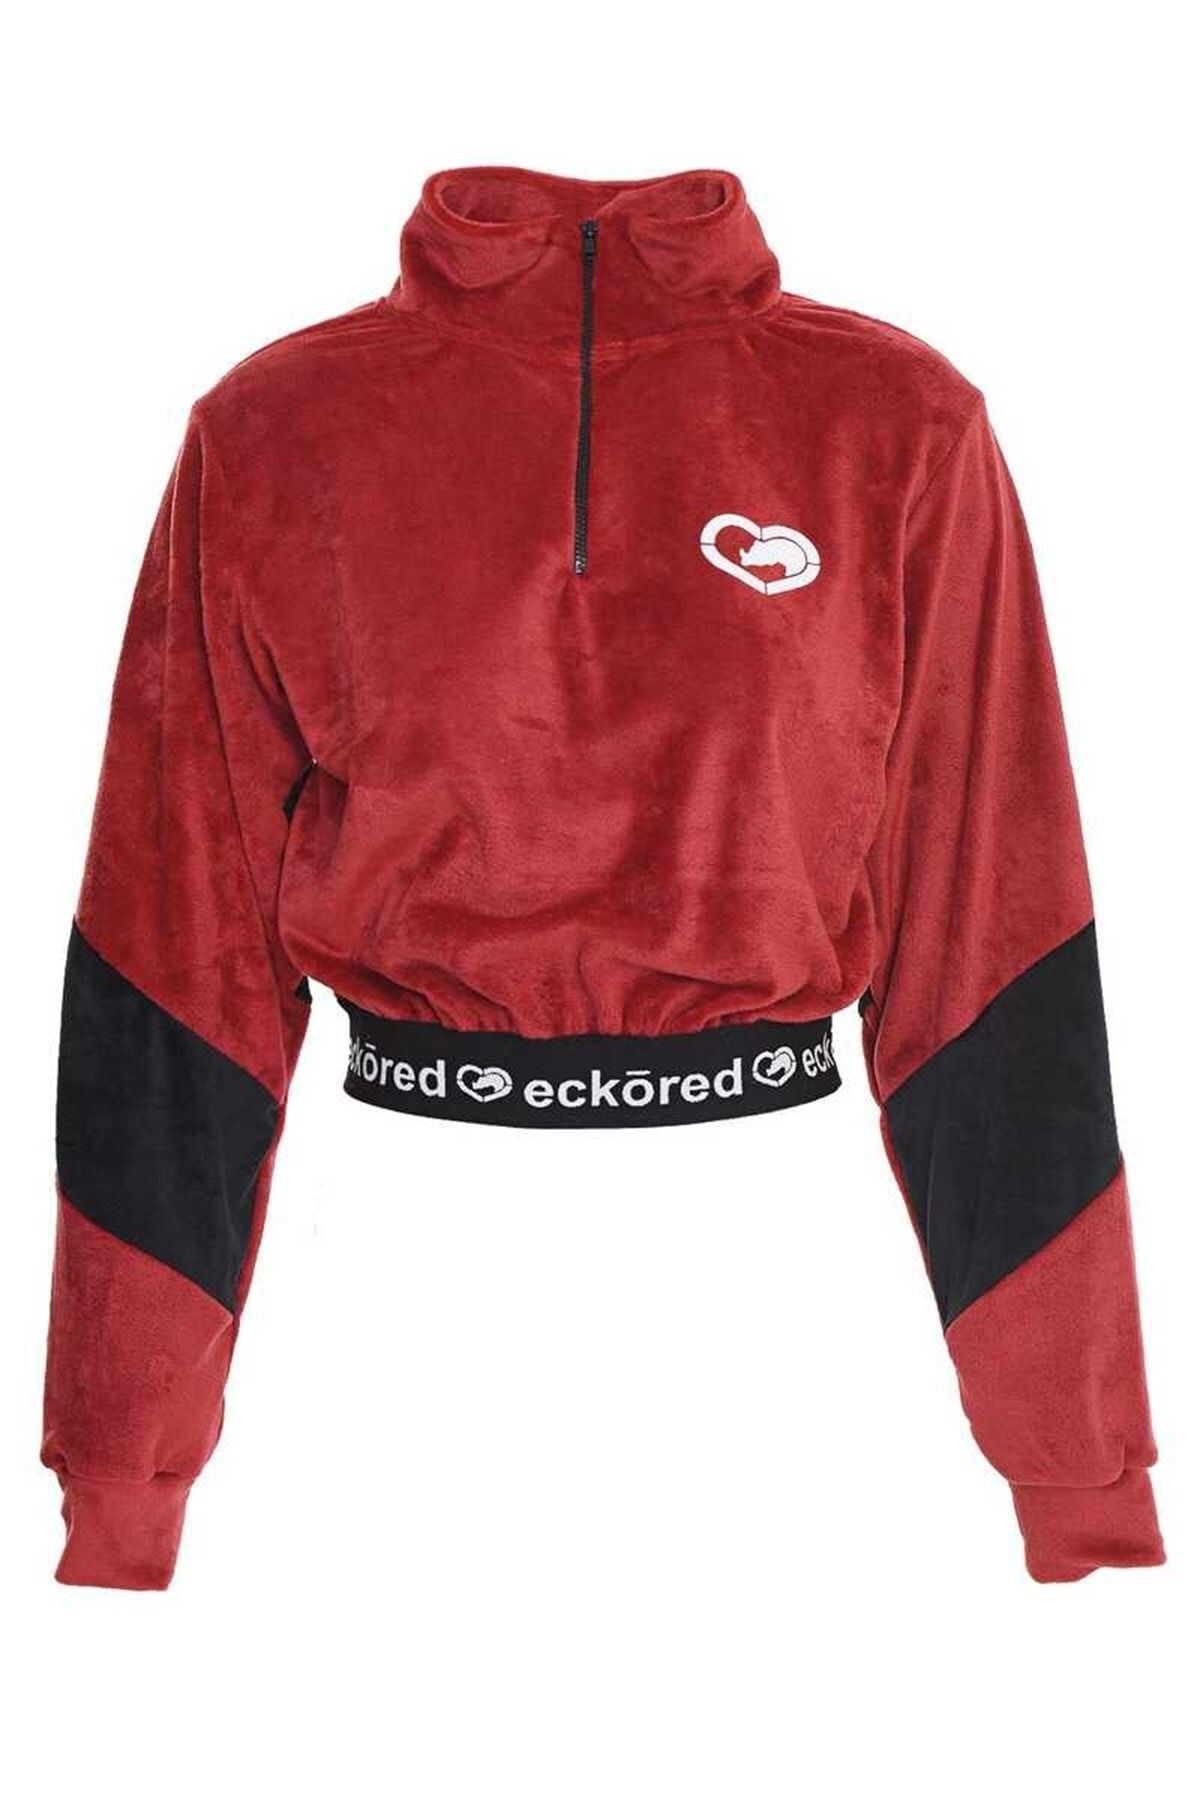 Ecko Unltd Ecko Red Sara Kadın Kadife Fermuarlı Sweatshirt